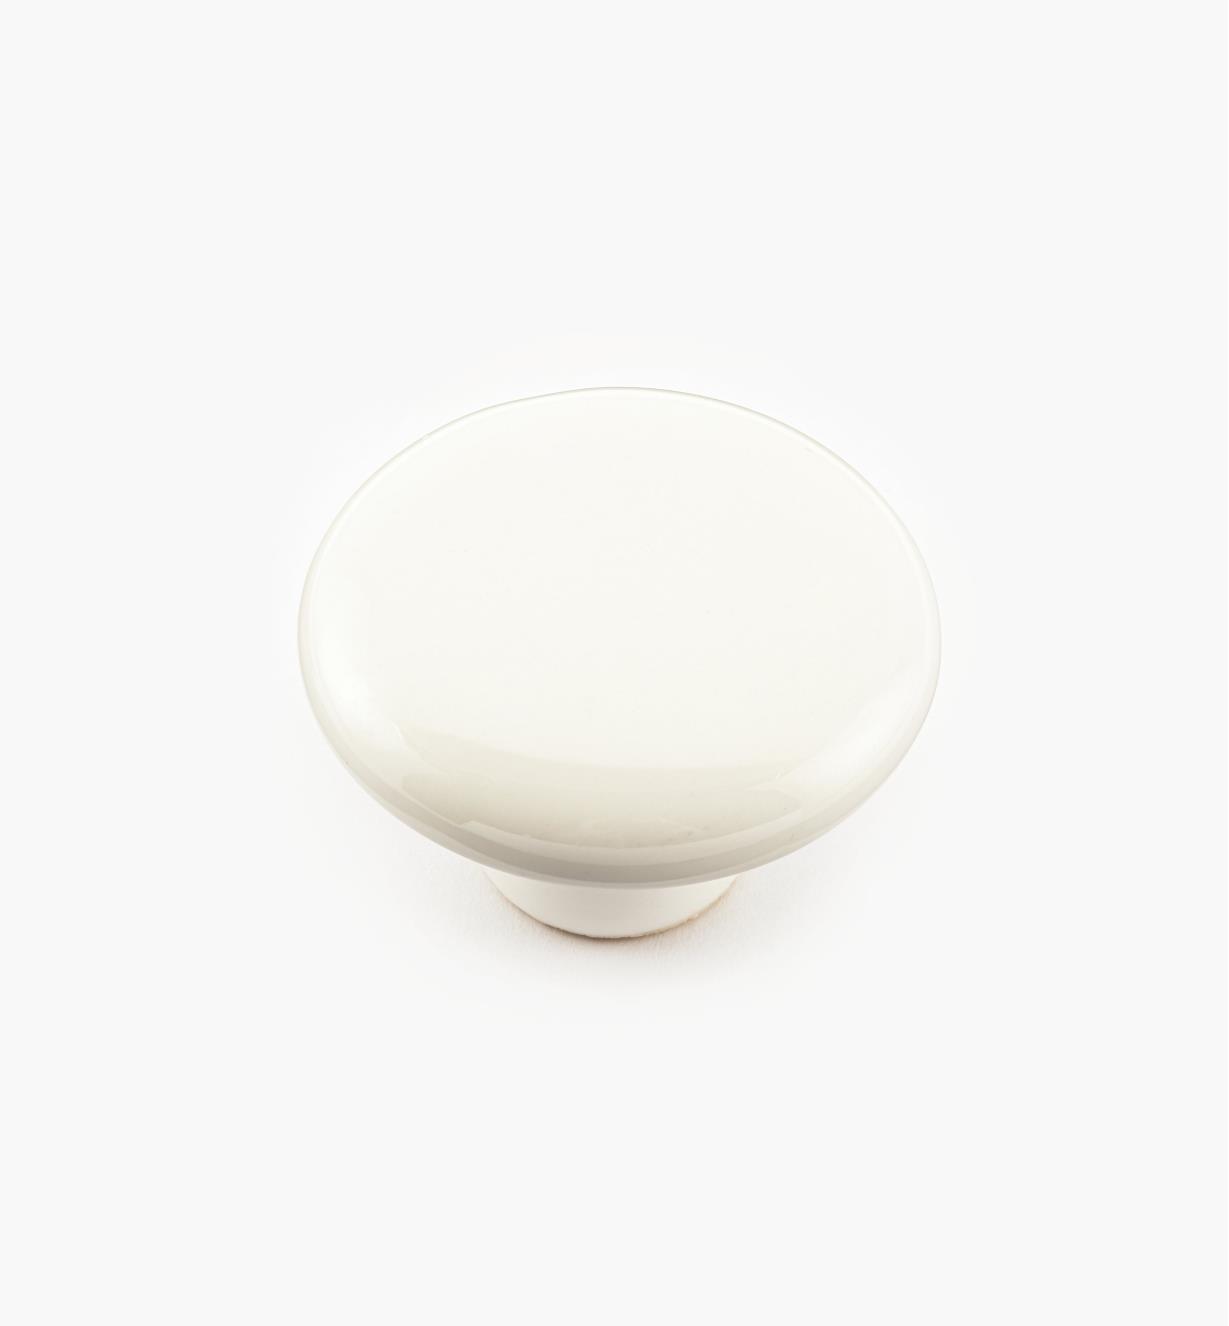 00W2804 - 1 1/2" x 1" White Ceramic Knob